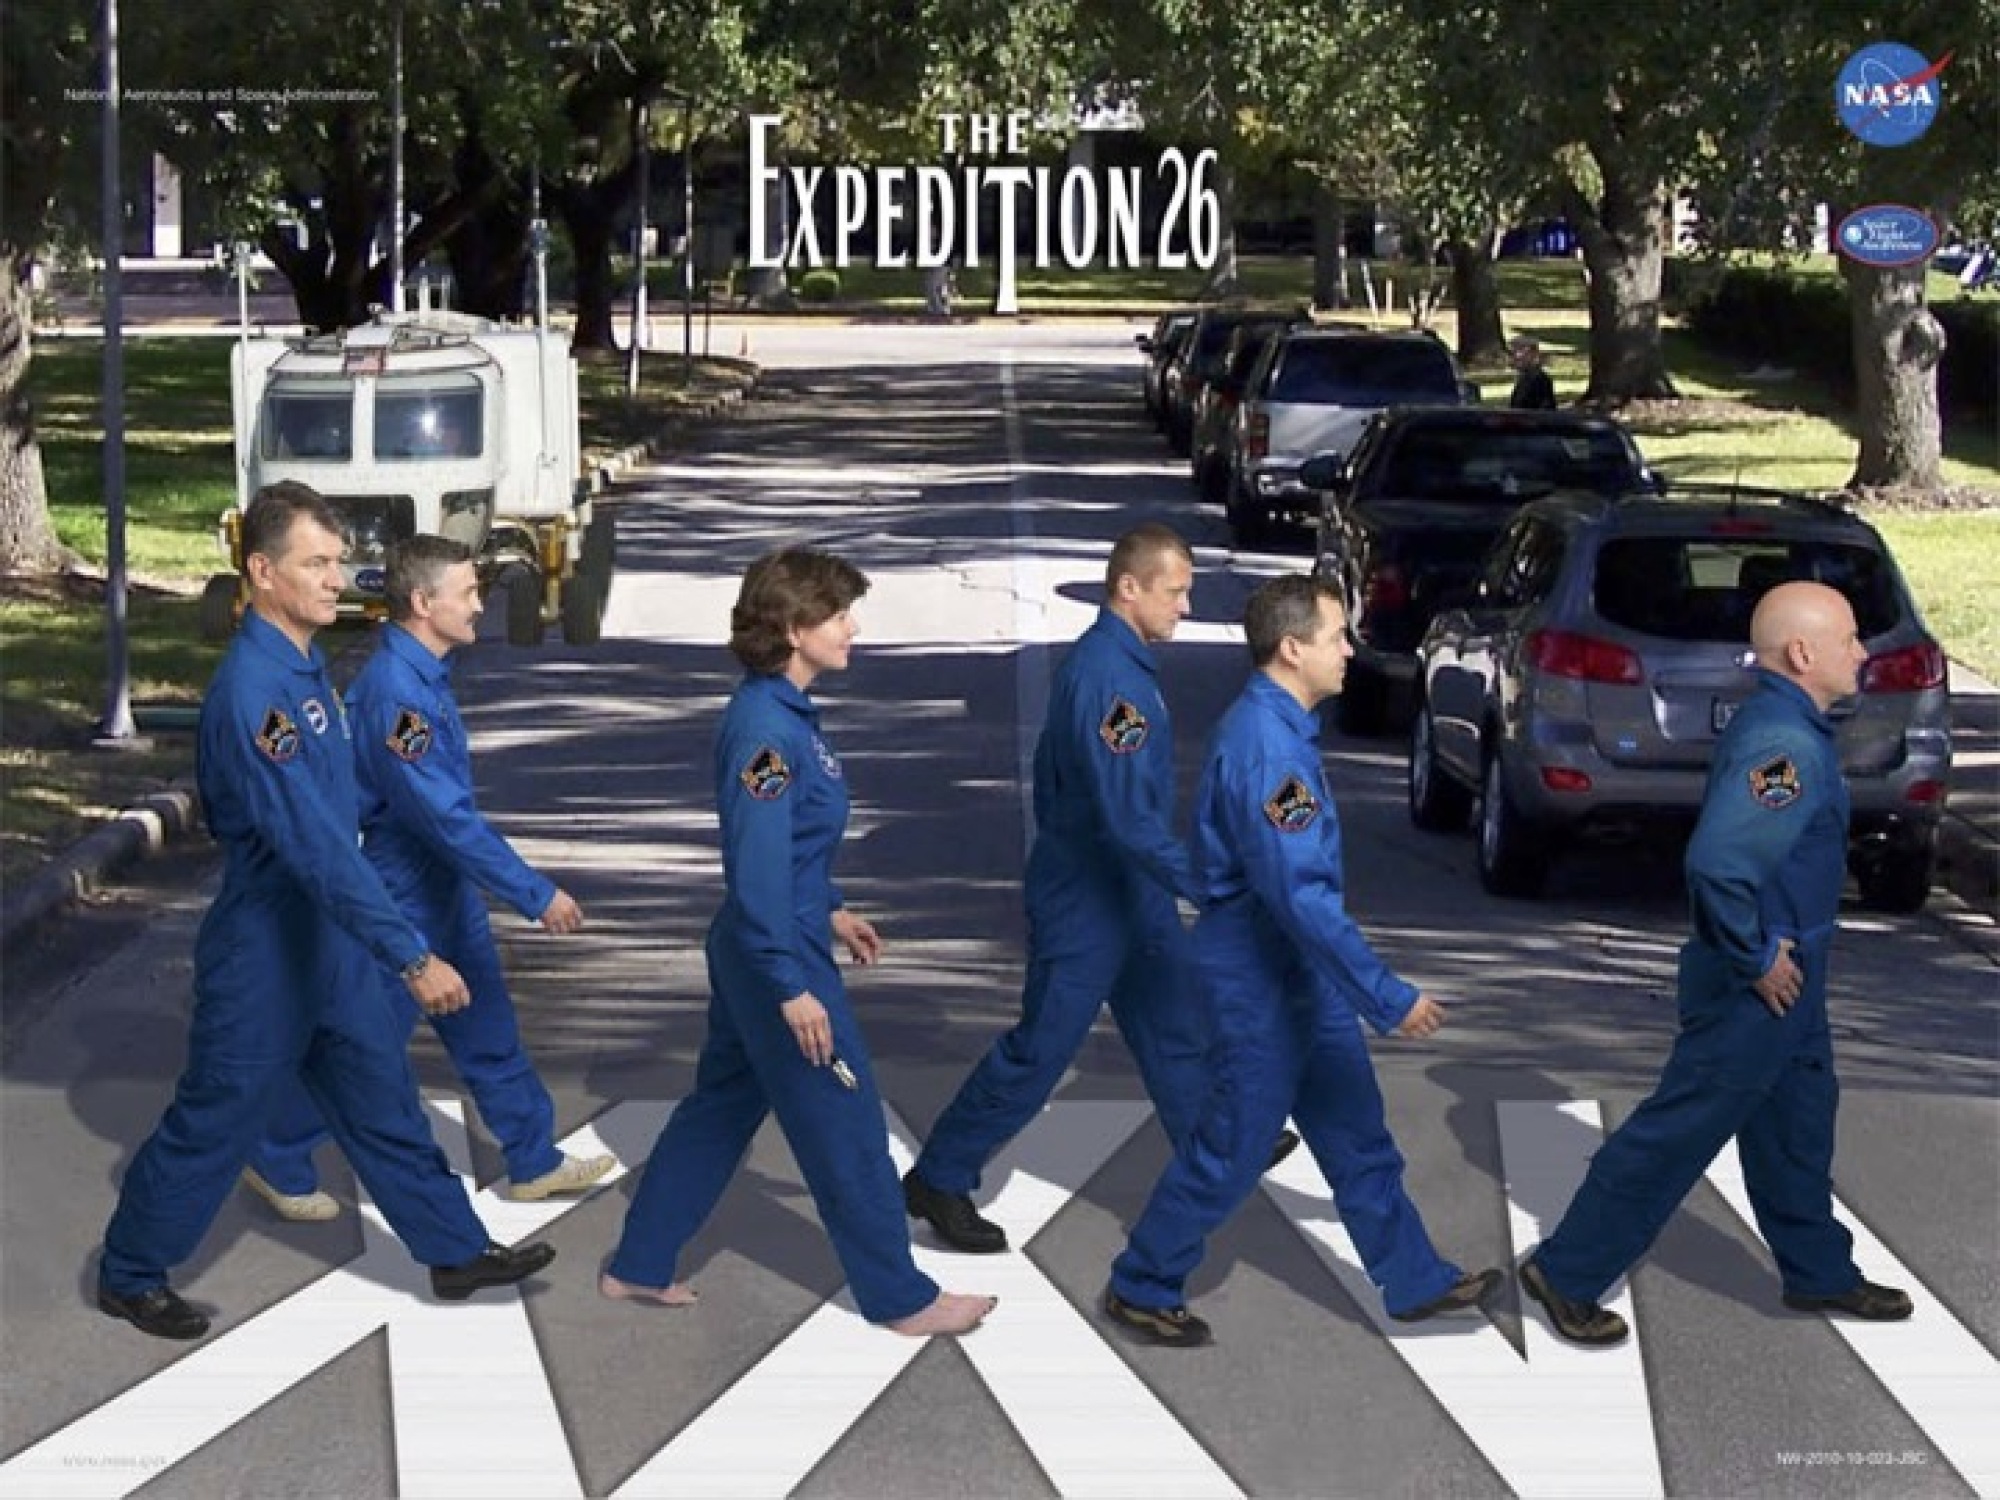 Des astronautes posant sur une affiche sur le thème d'Abbey Road